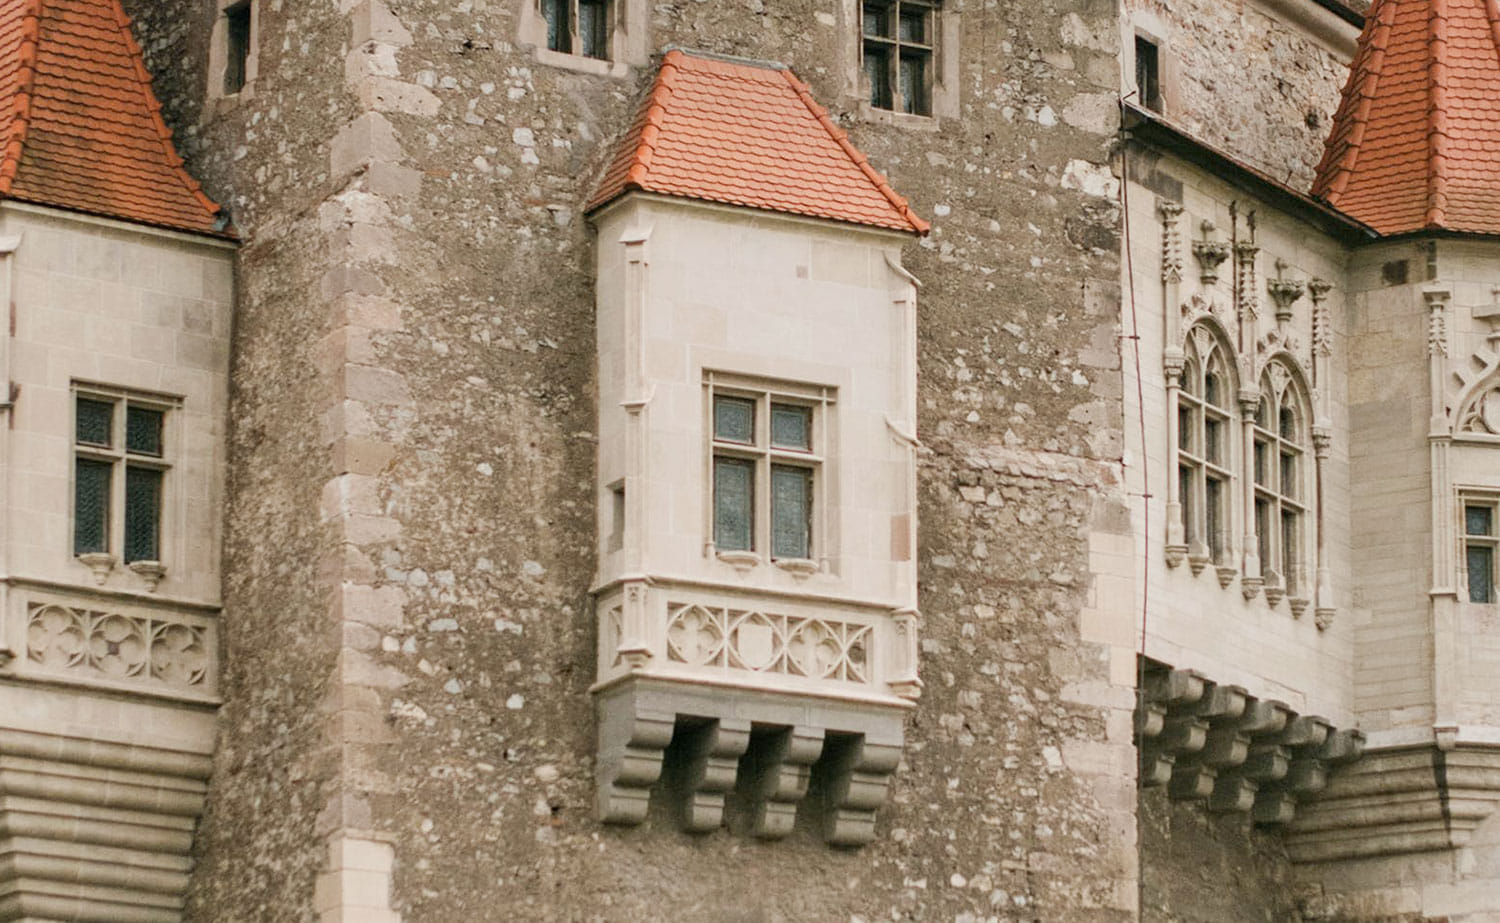 Historic Oriel window on a castle.